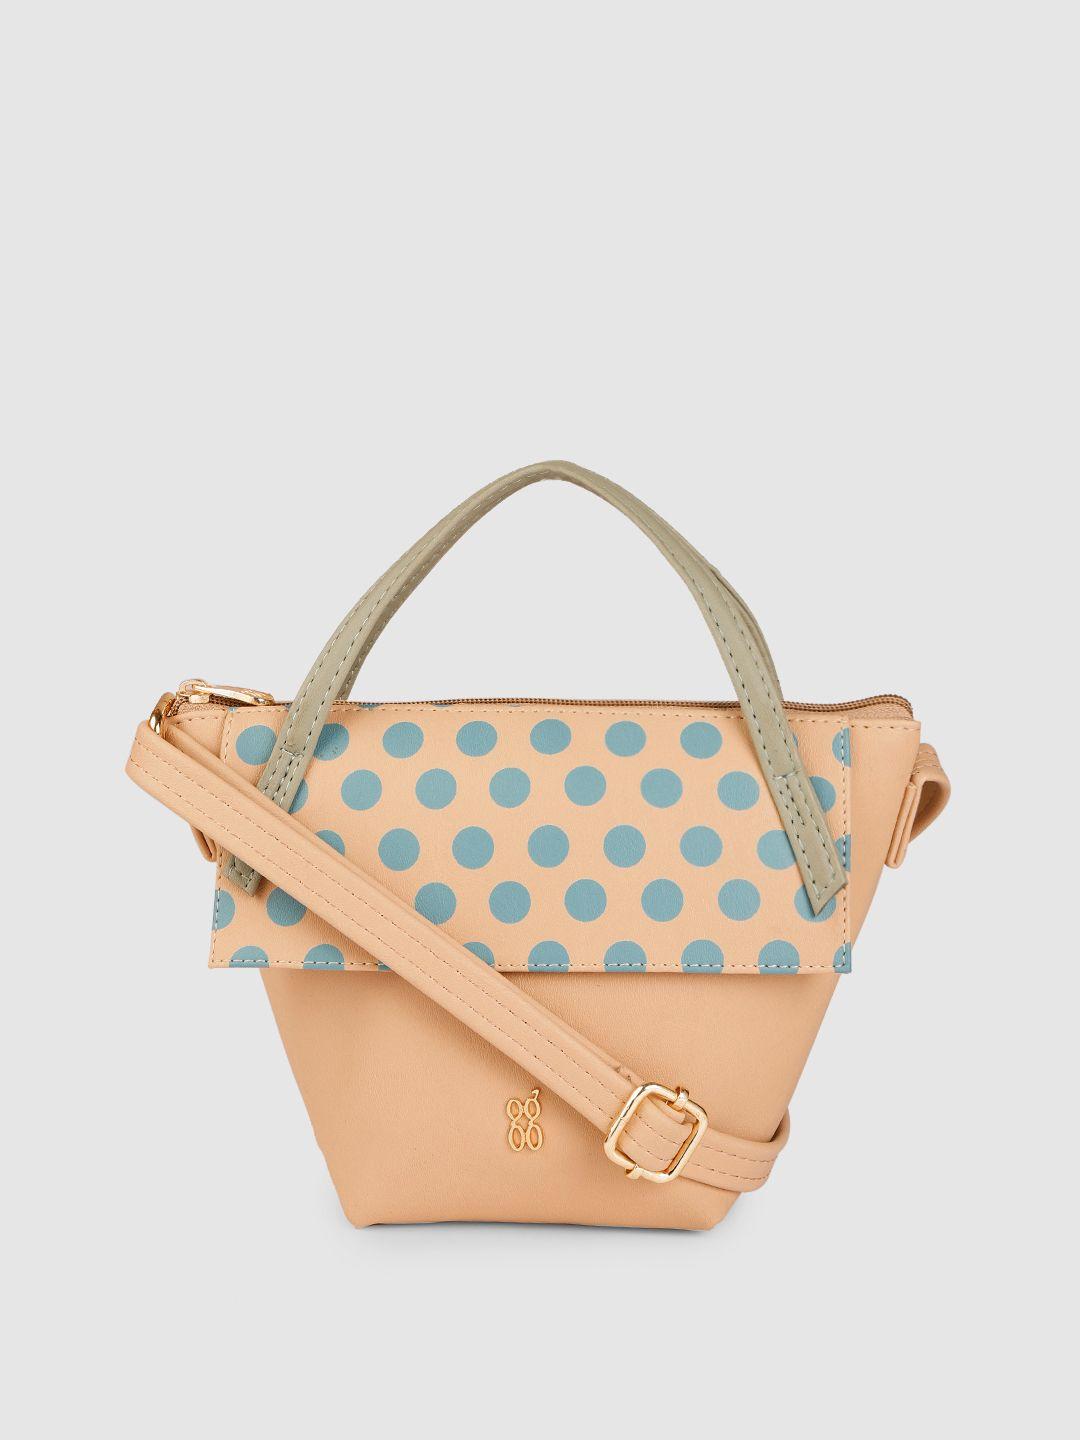 baggit beige & blue solid regular structured handheld bag with polka dots print applique